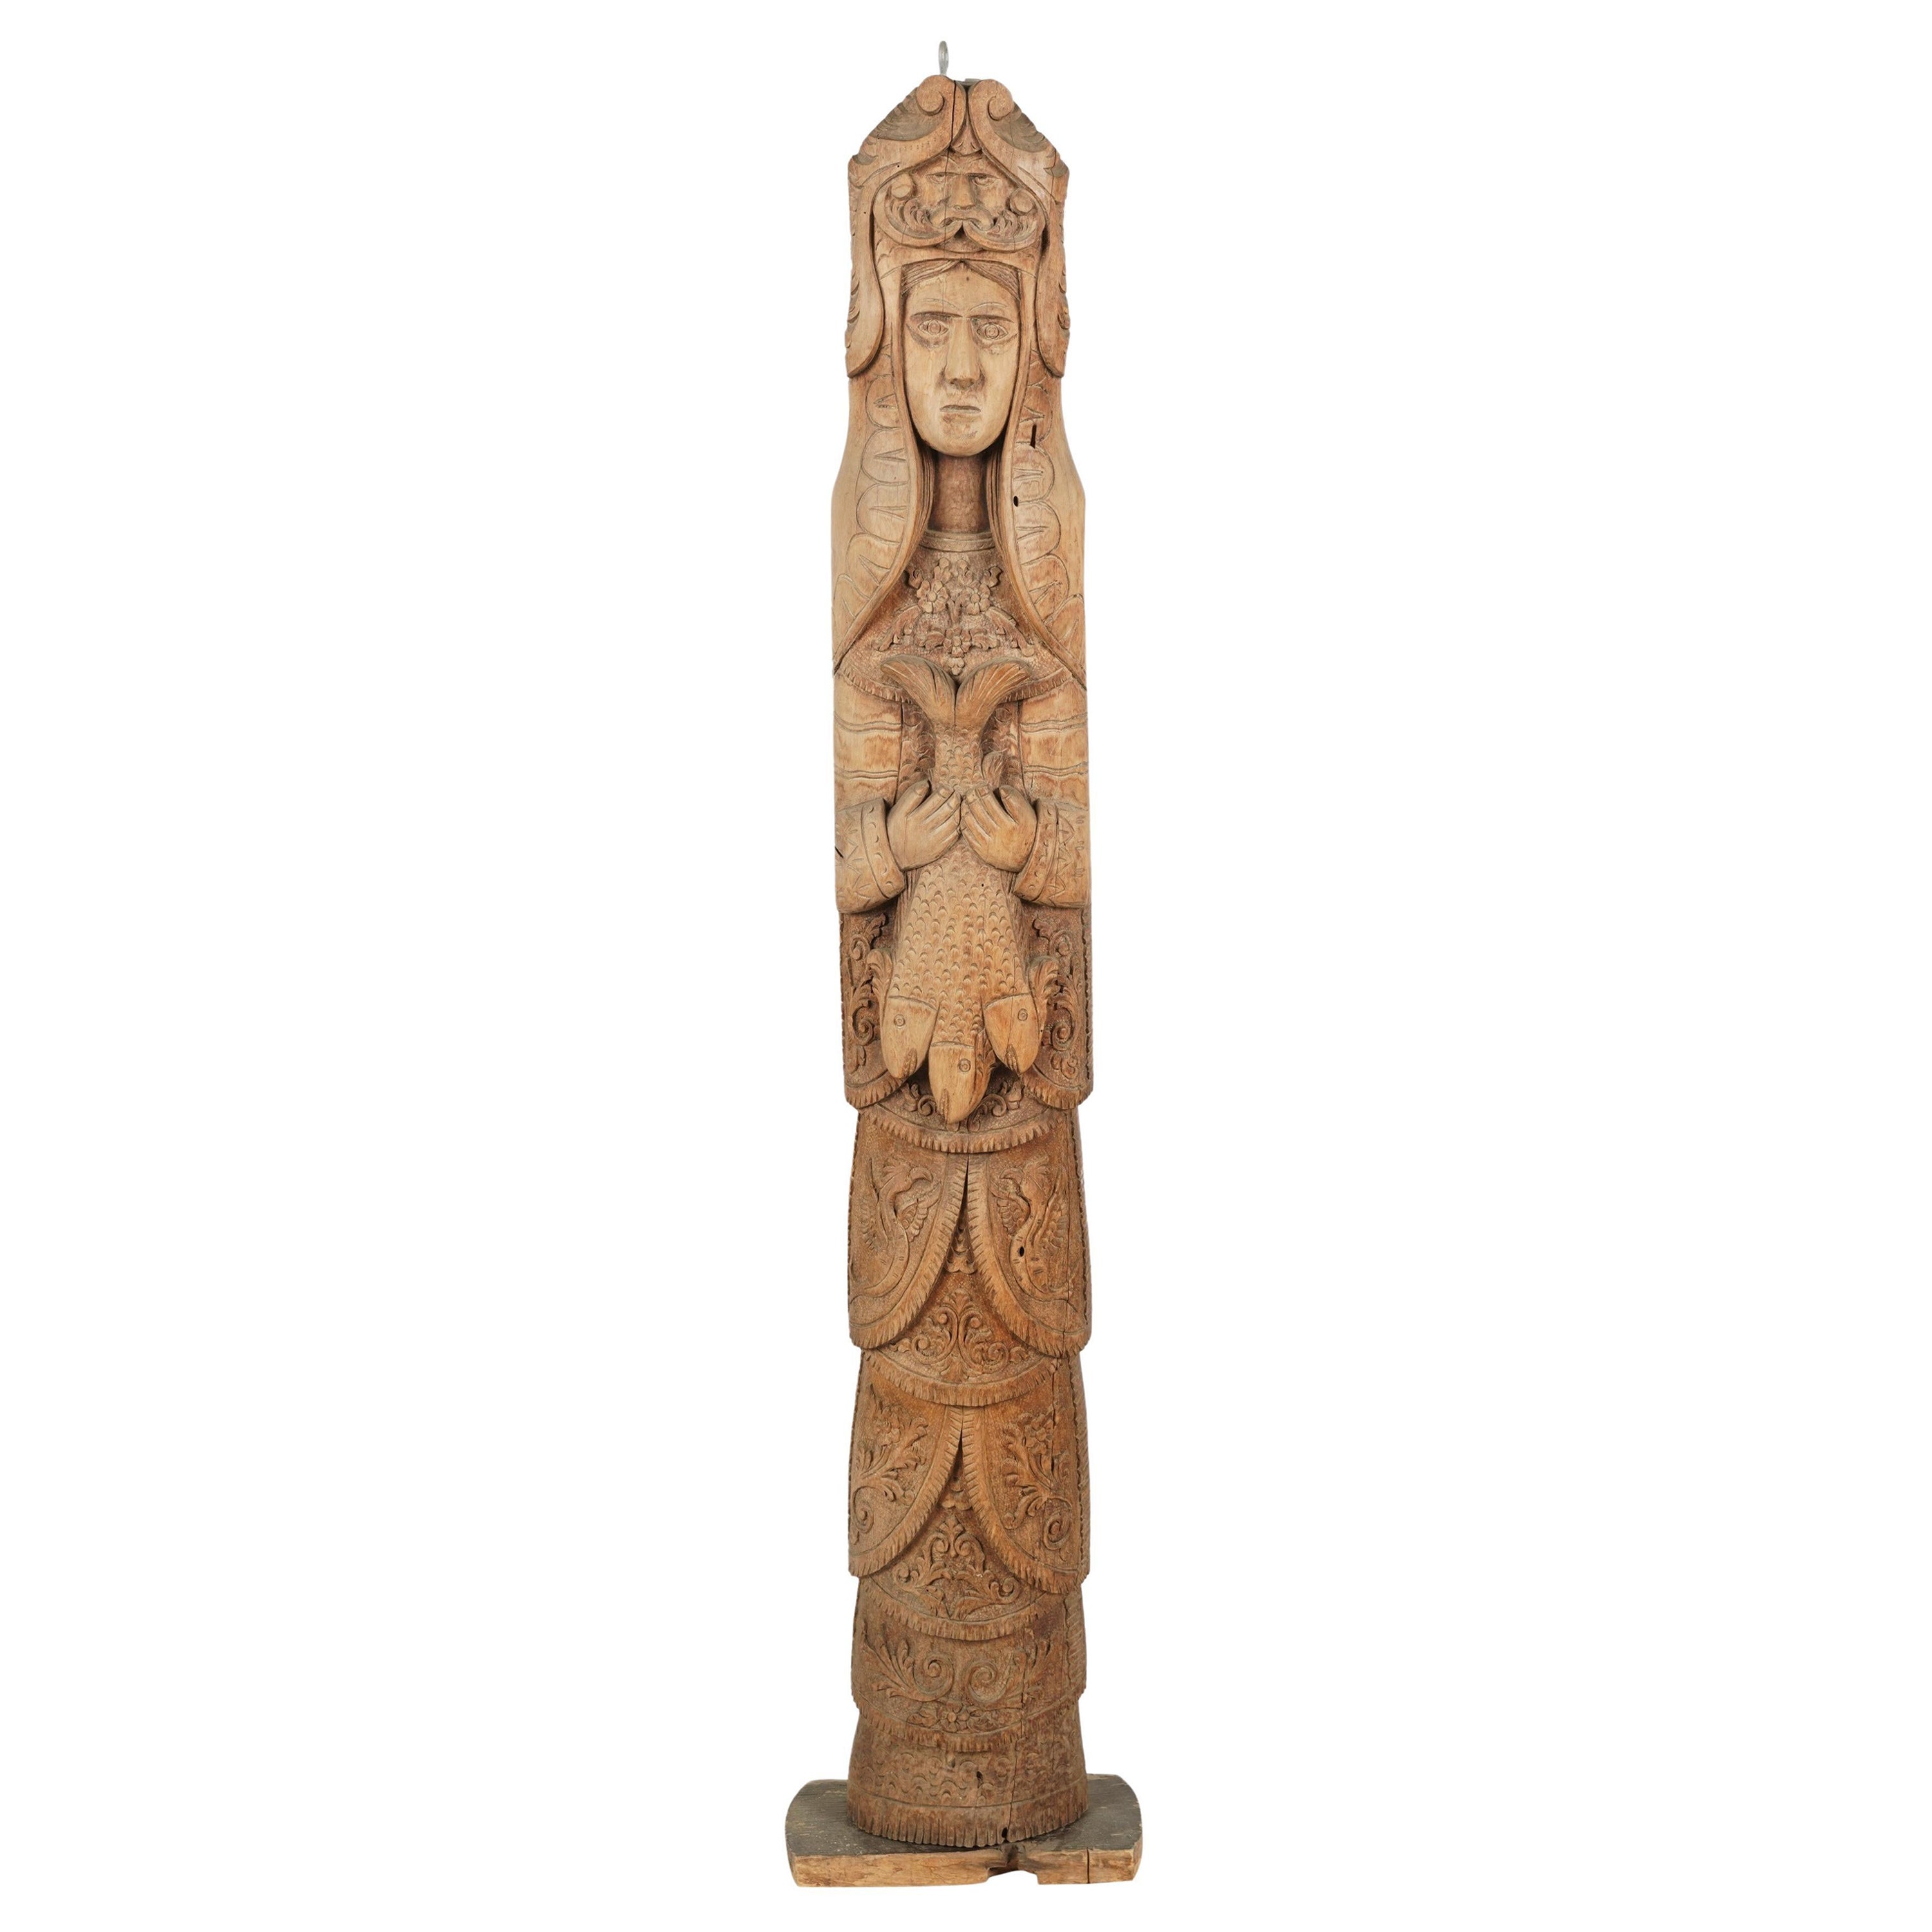 Grand Totem celtique nordique scandinave viking Art Wood Carved Pagan Totem